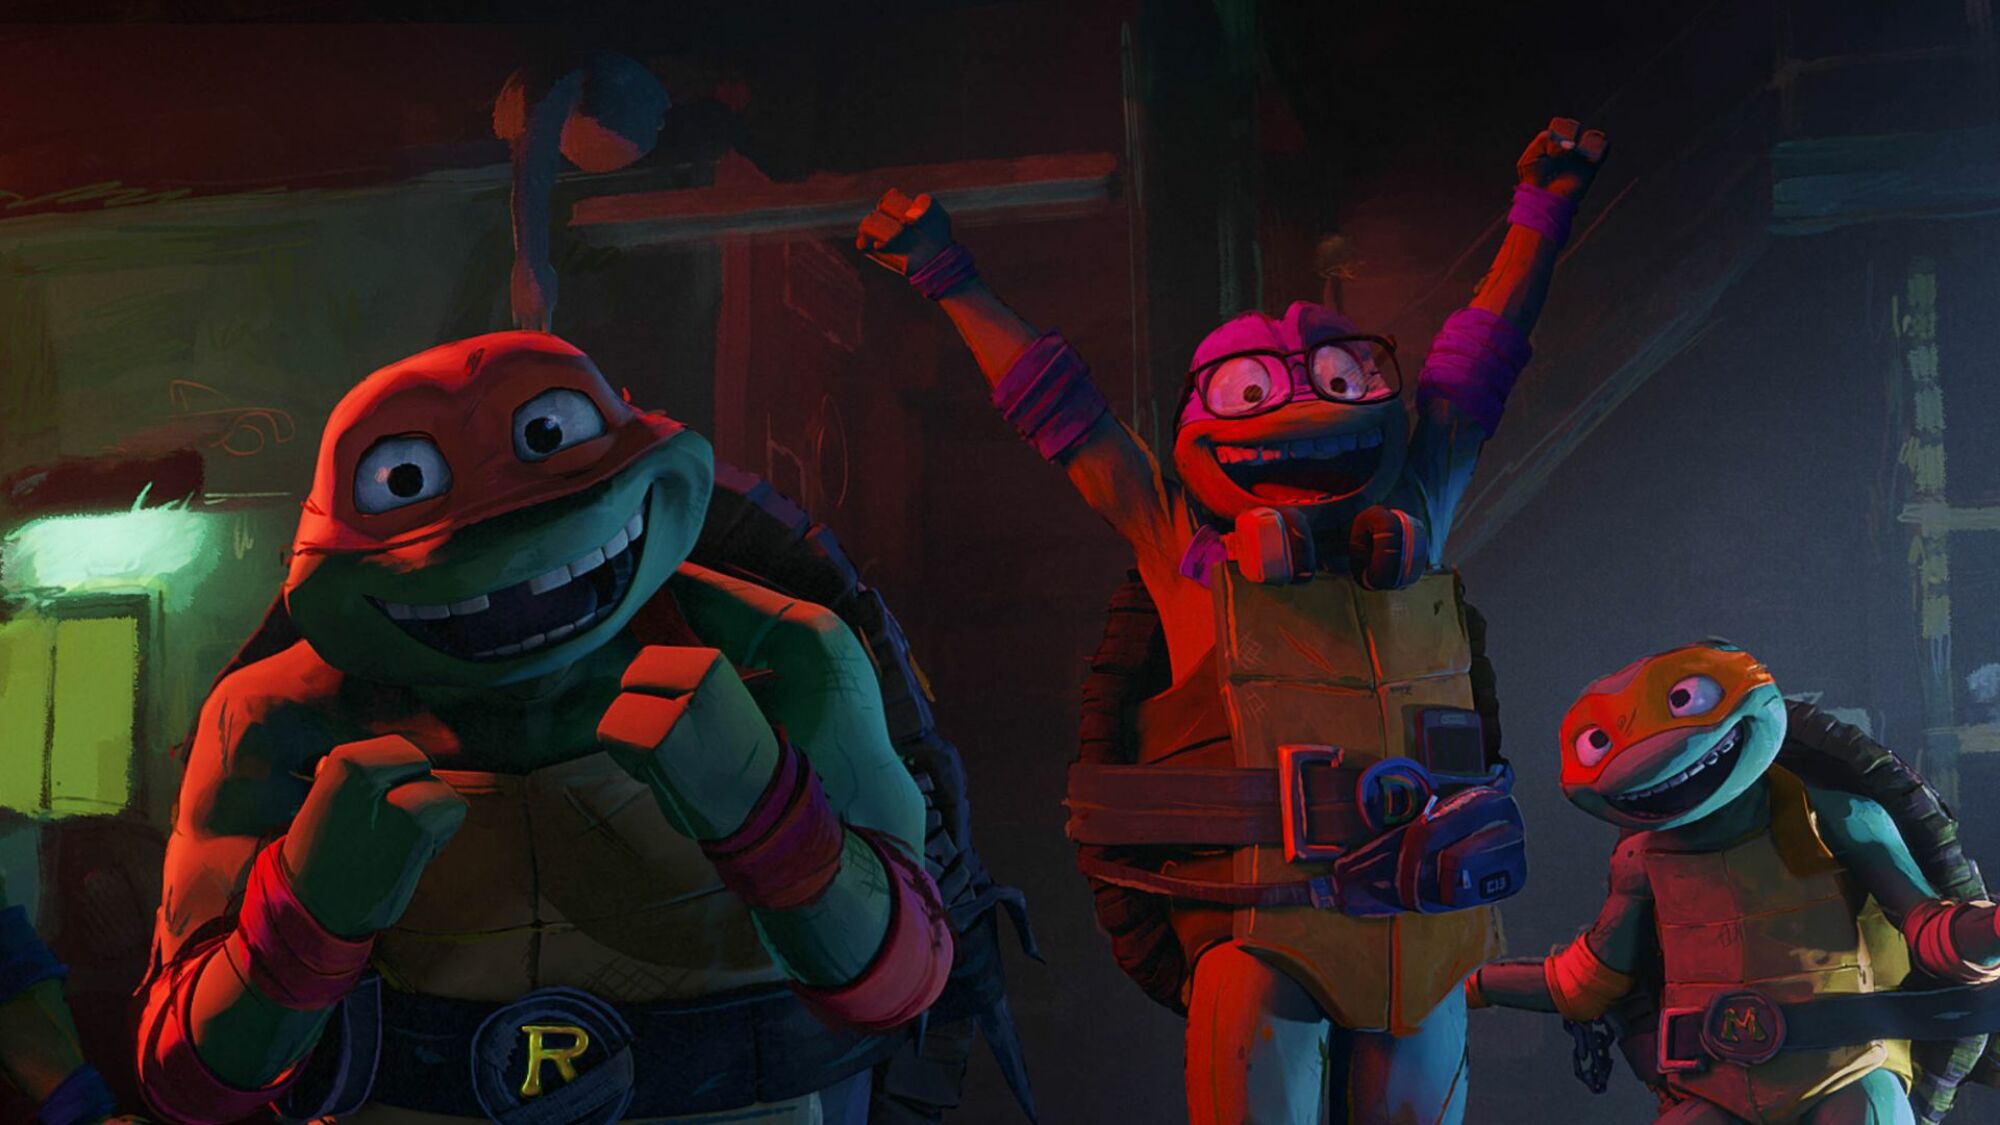 The turtles in "Teenage Mutant Ninja Turtles: Mutant Mayhem"